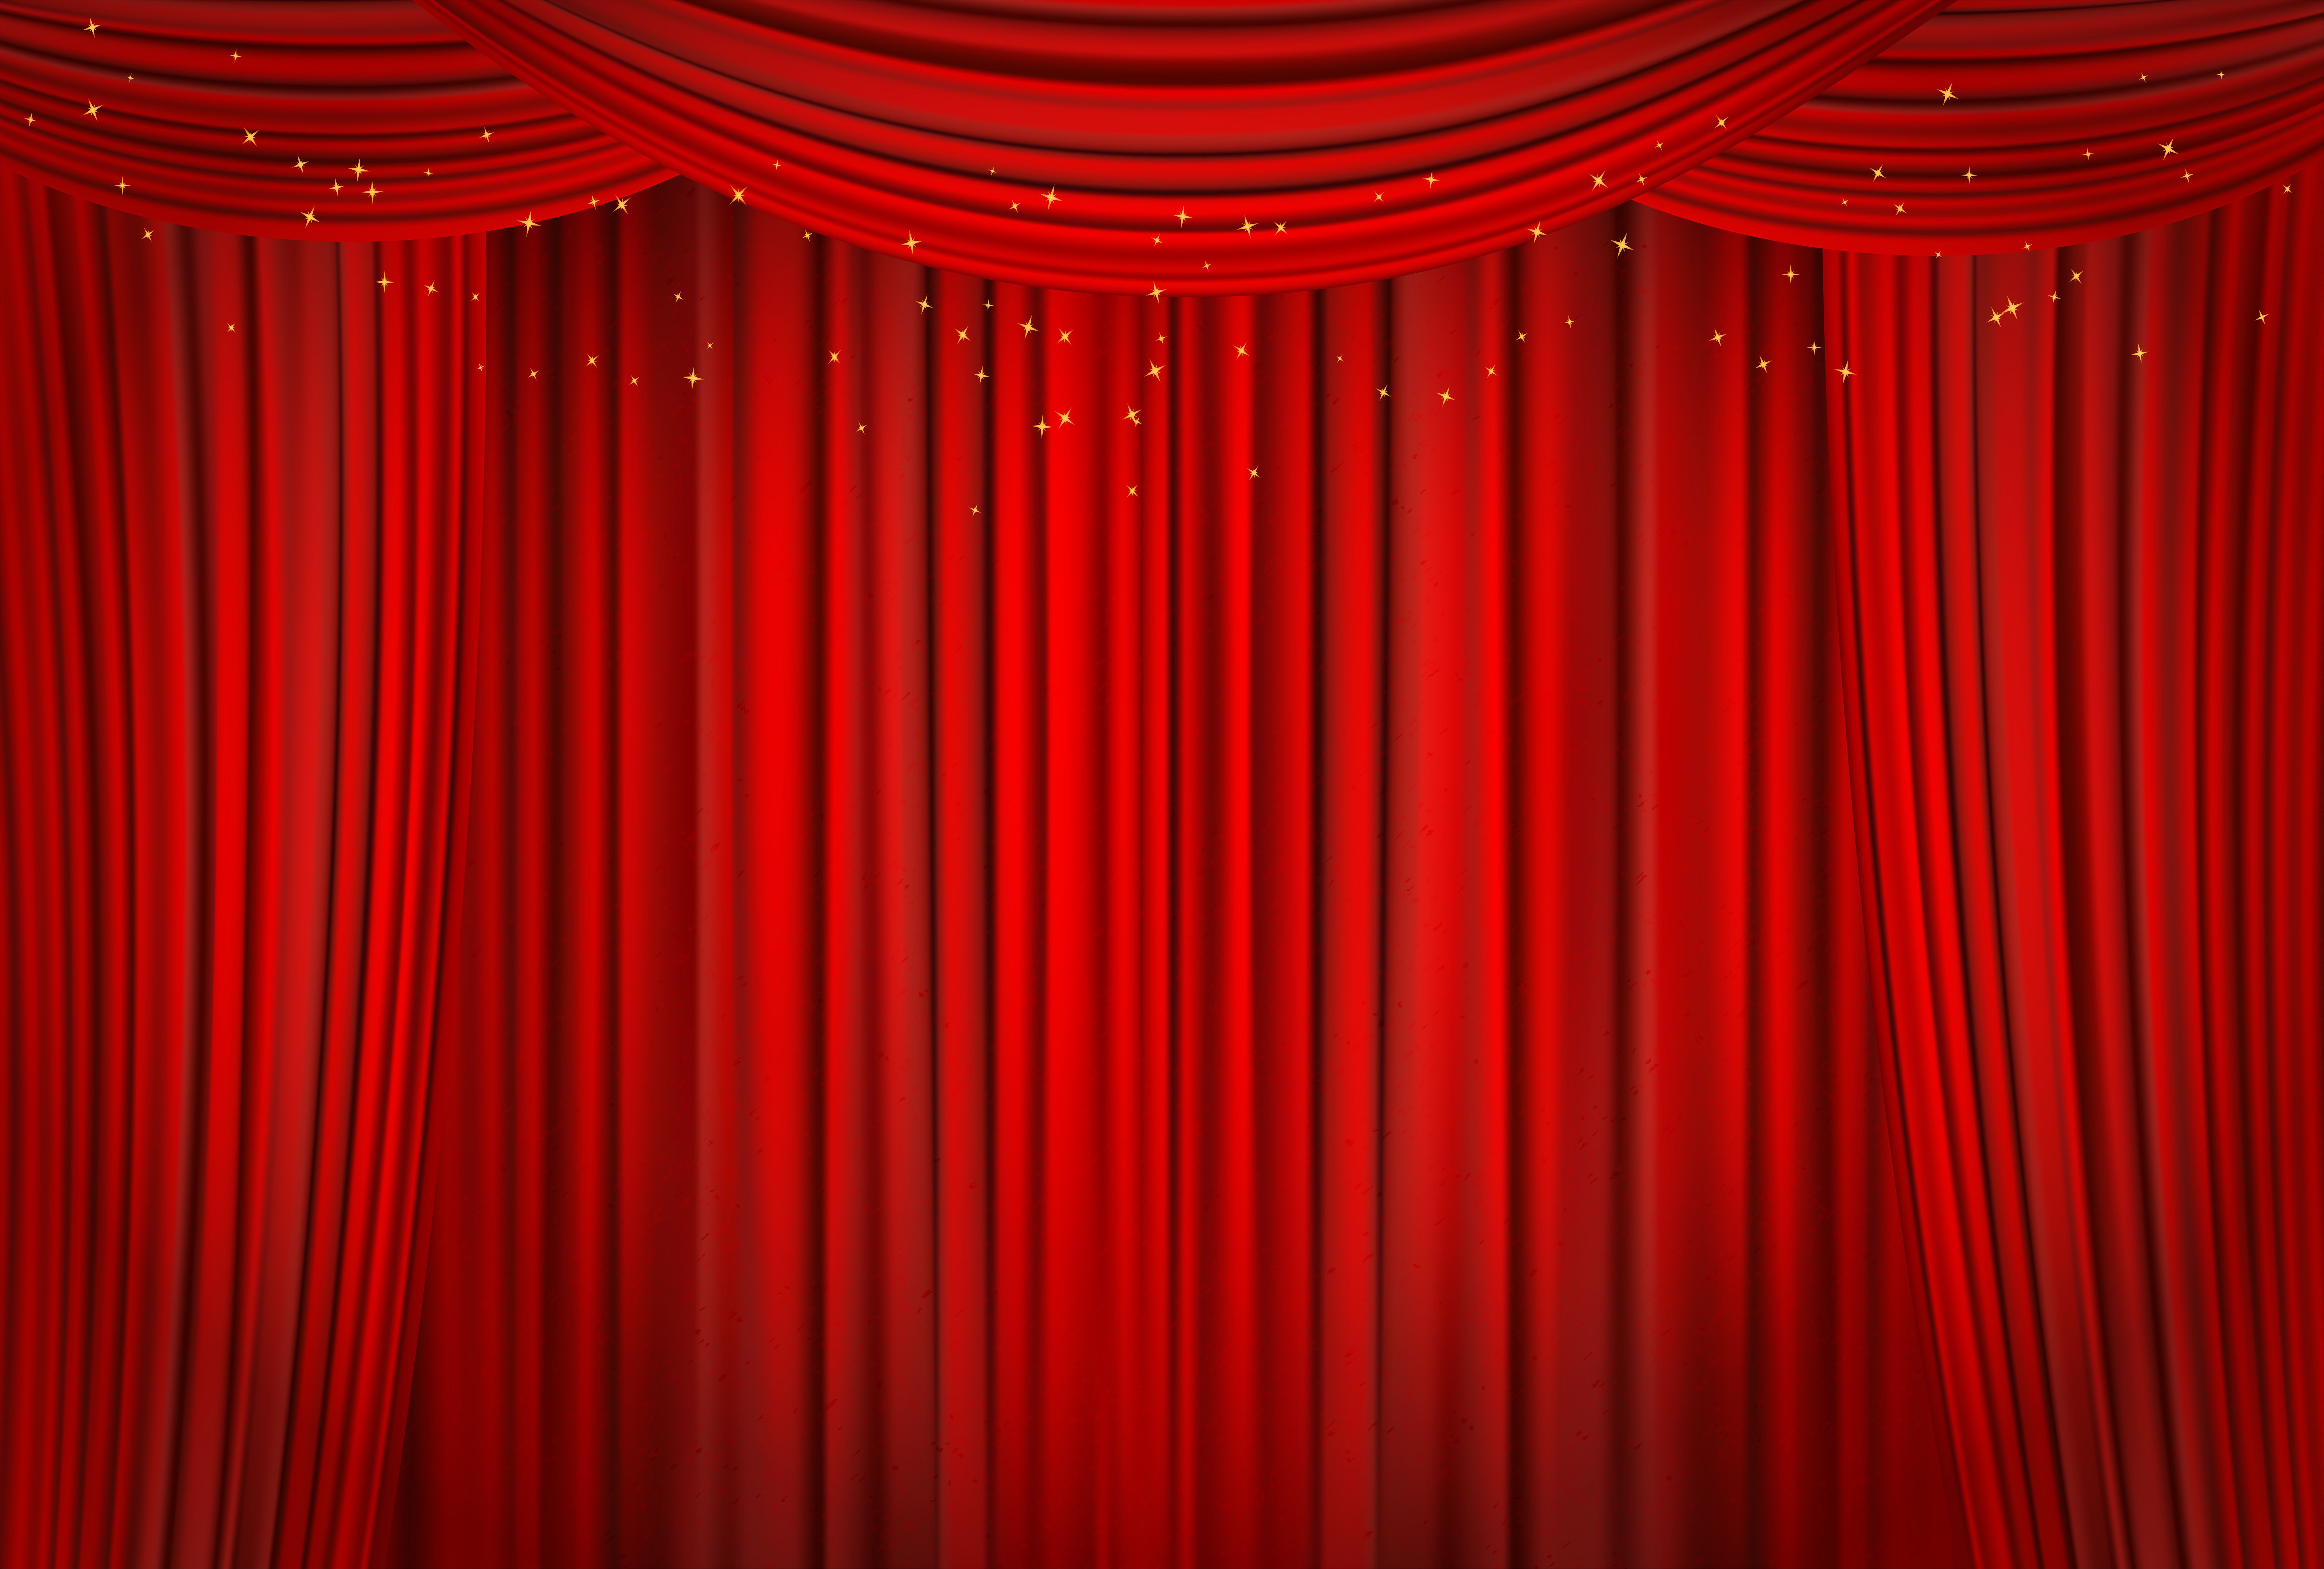 Curtain s. Красный занавес. Красные занавески. Театральный занавес. Занавес в театре.